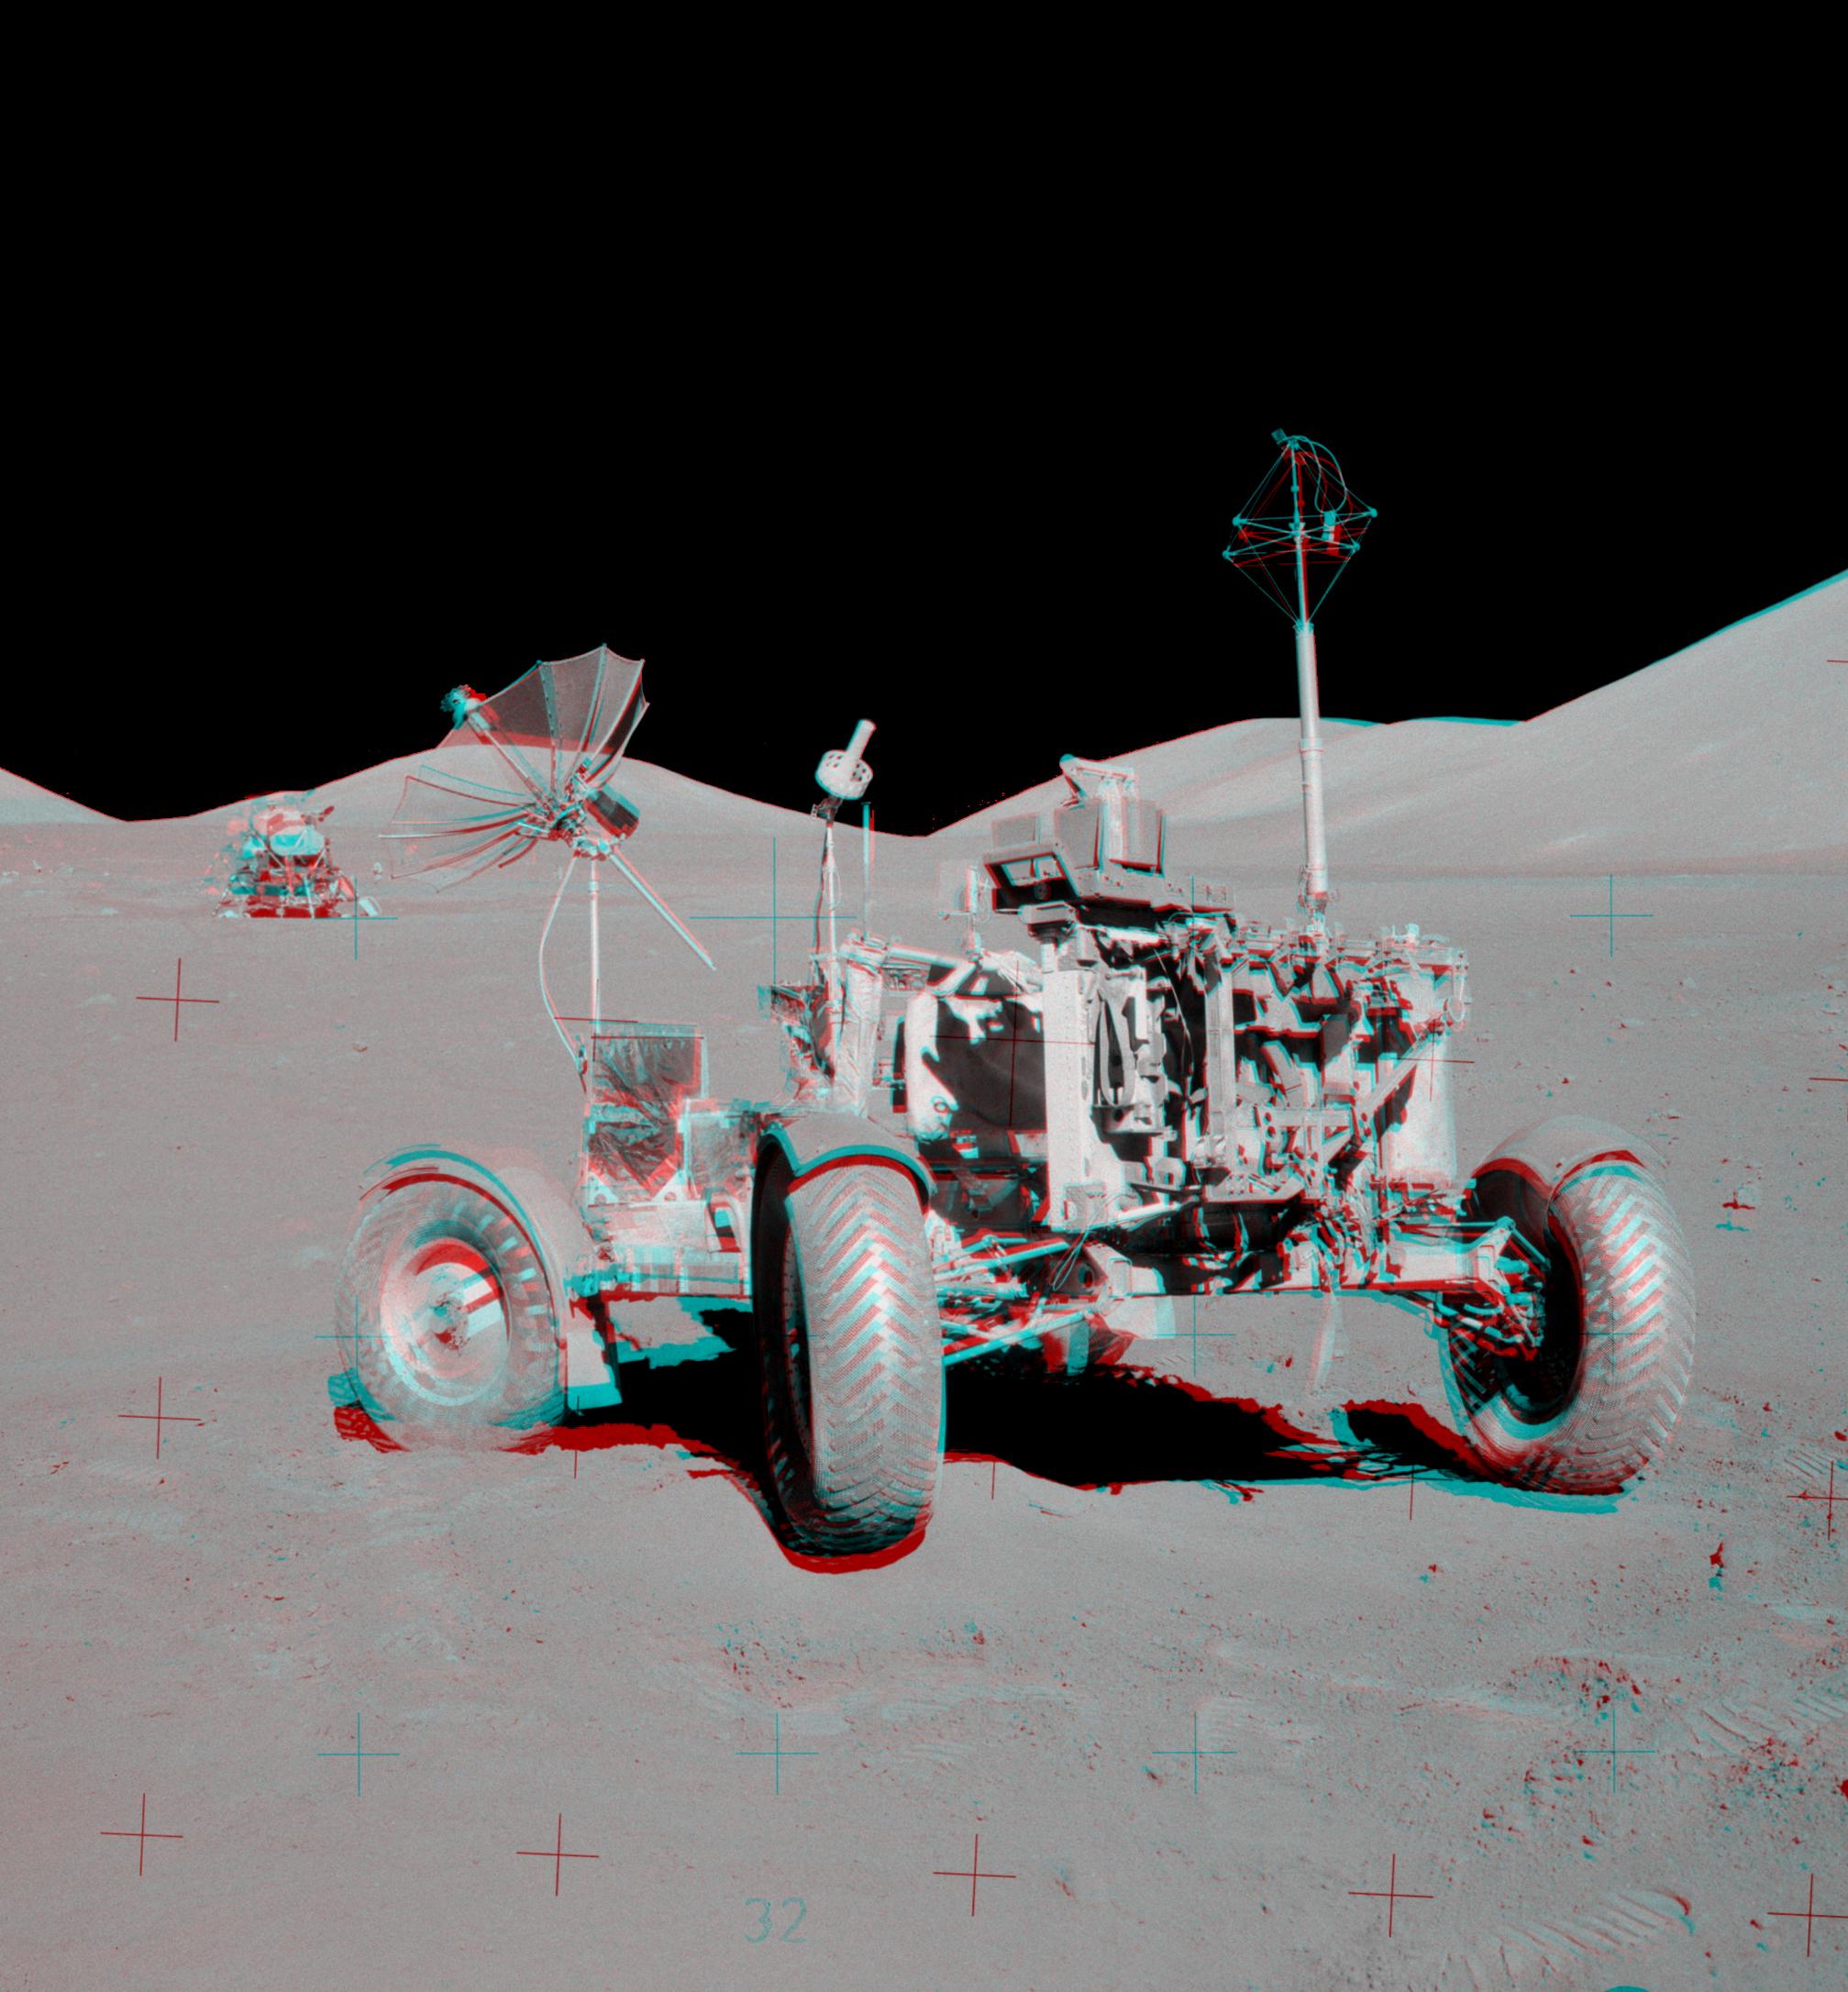 صورة مجسّمة بالأزرق والأحمر تظهر العربة القمريّة الجوّالة ومن خلفها الوحدة القمريّة ومن حولهما التلال